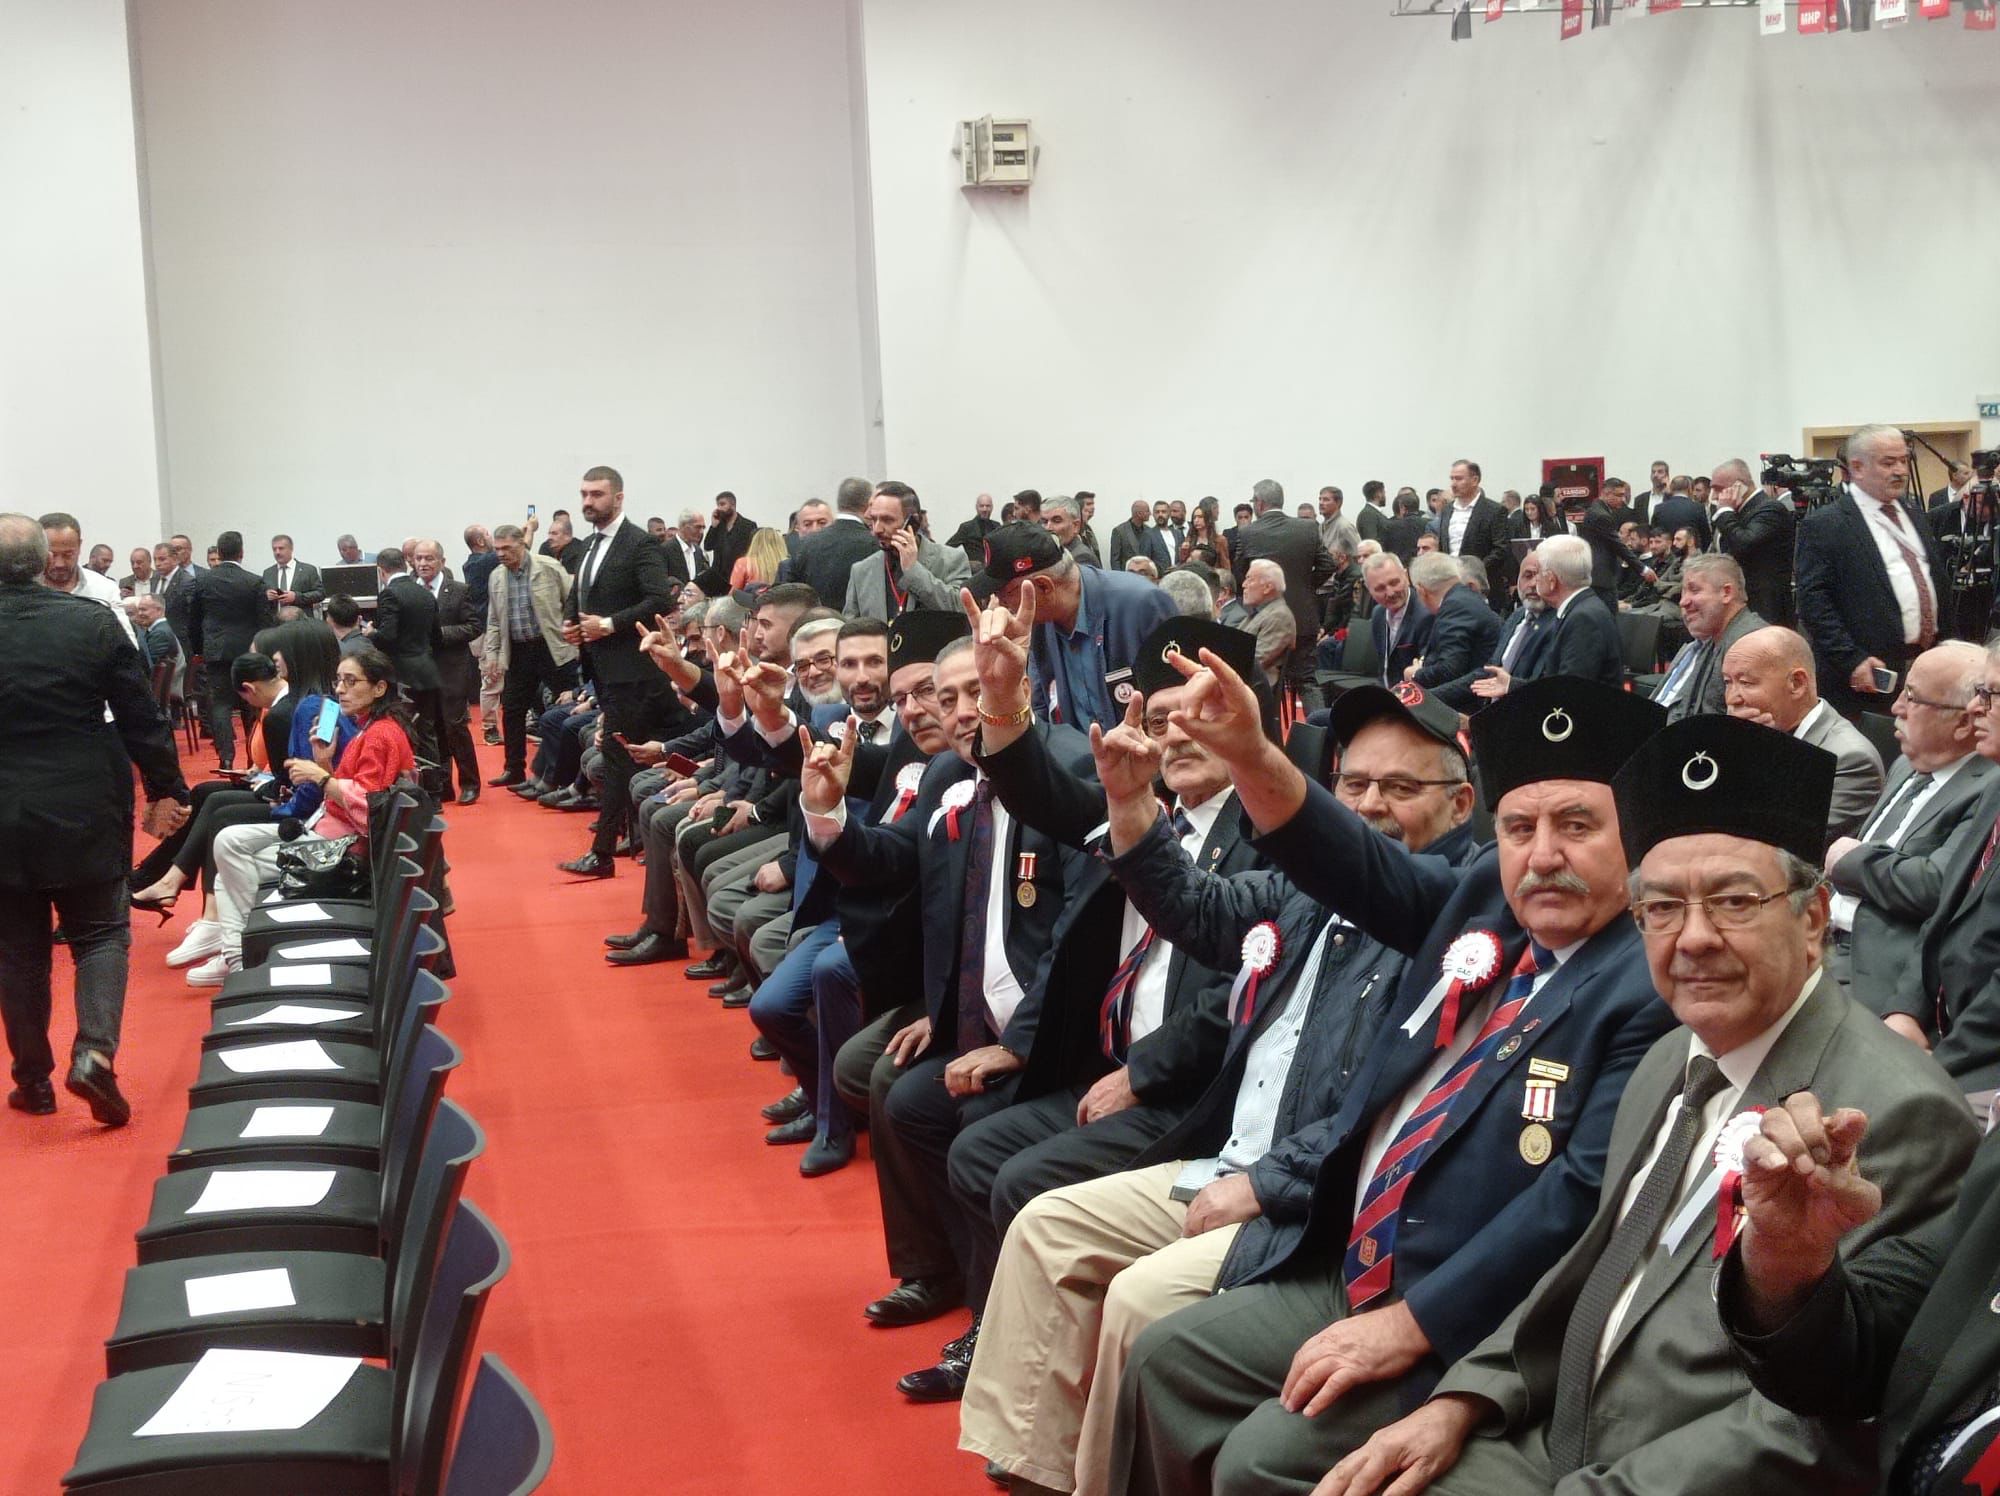 Yönetim Kurulu Üyelerimiz ve kahraman gazilerimiz ile birlikte MHP Ankara İl Başkanlığı 14. Olağan Kongresine katıldık.  İl Başkanı Alparslan DOĞAN'a görevinde üstün muvaffakiyetler dileriz.